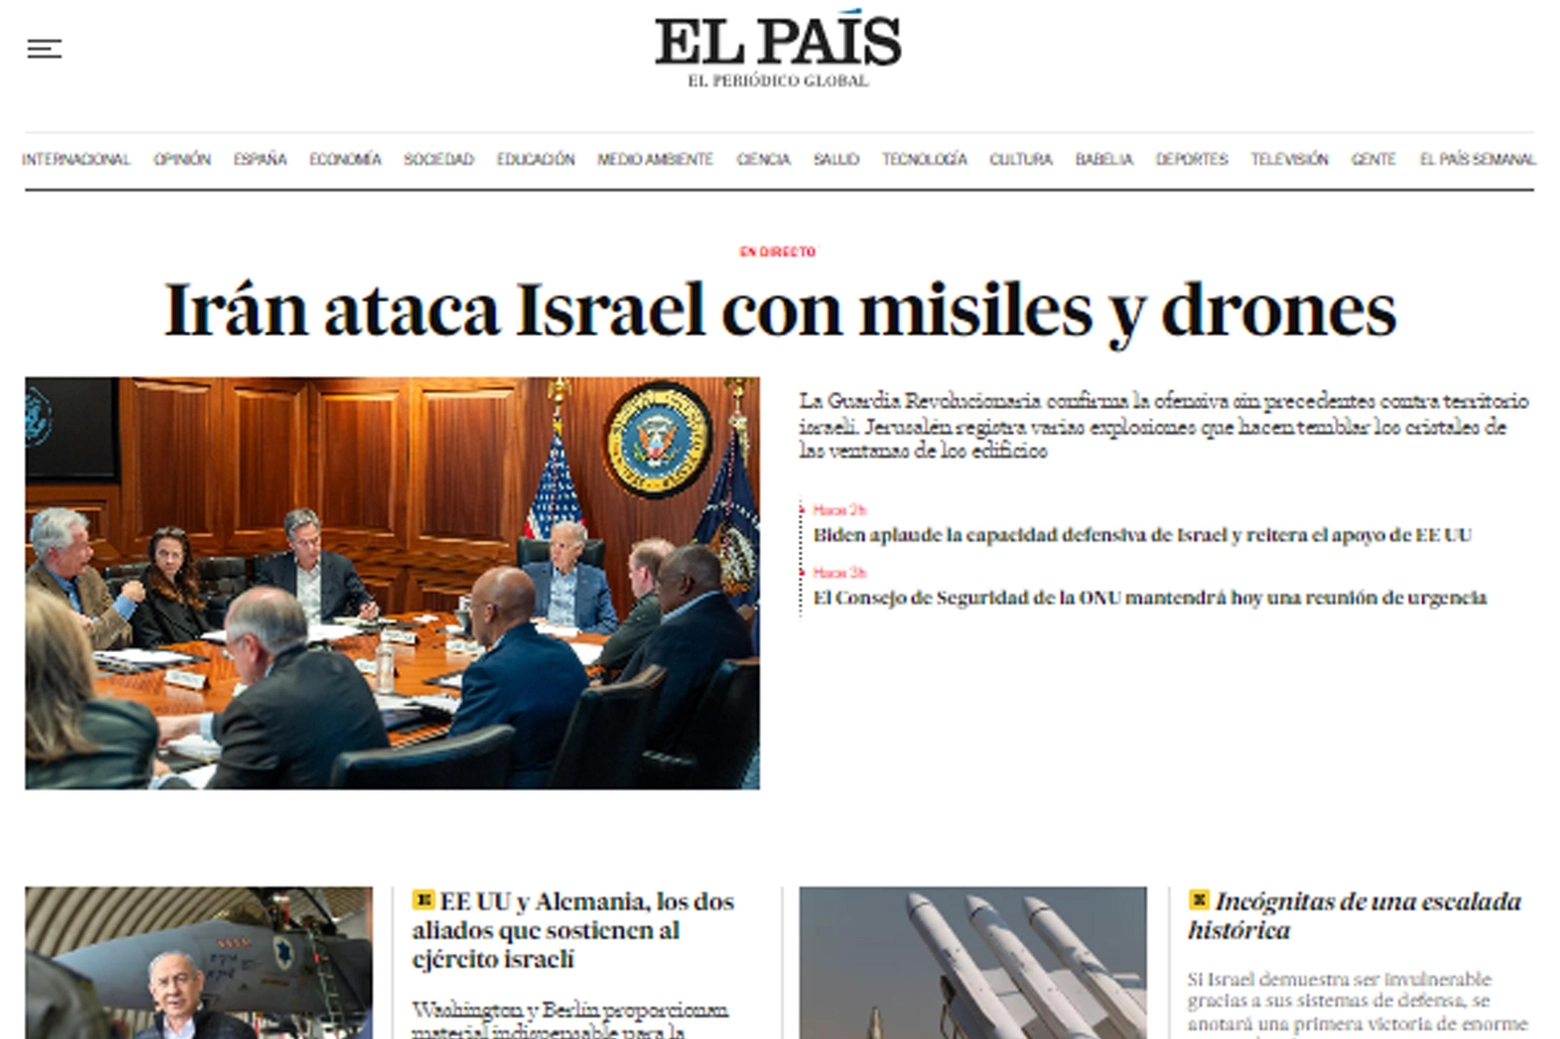 El Pais: "L'Iran attaca Israele con missili e droni"